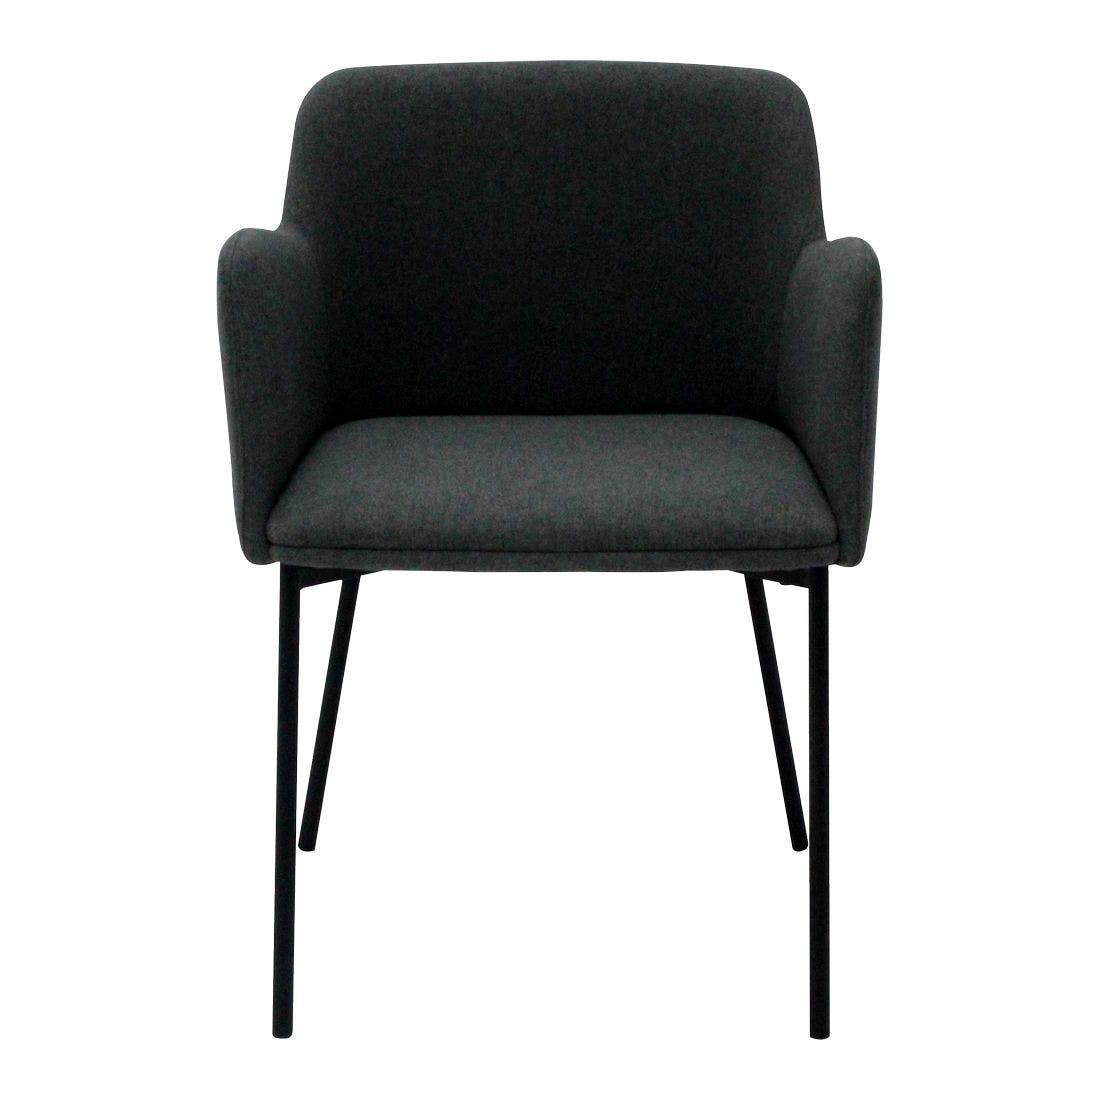 เก้าอี้เบาะผ้า Habitat รุ่น Ermin สีเทาเข้ม1